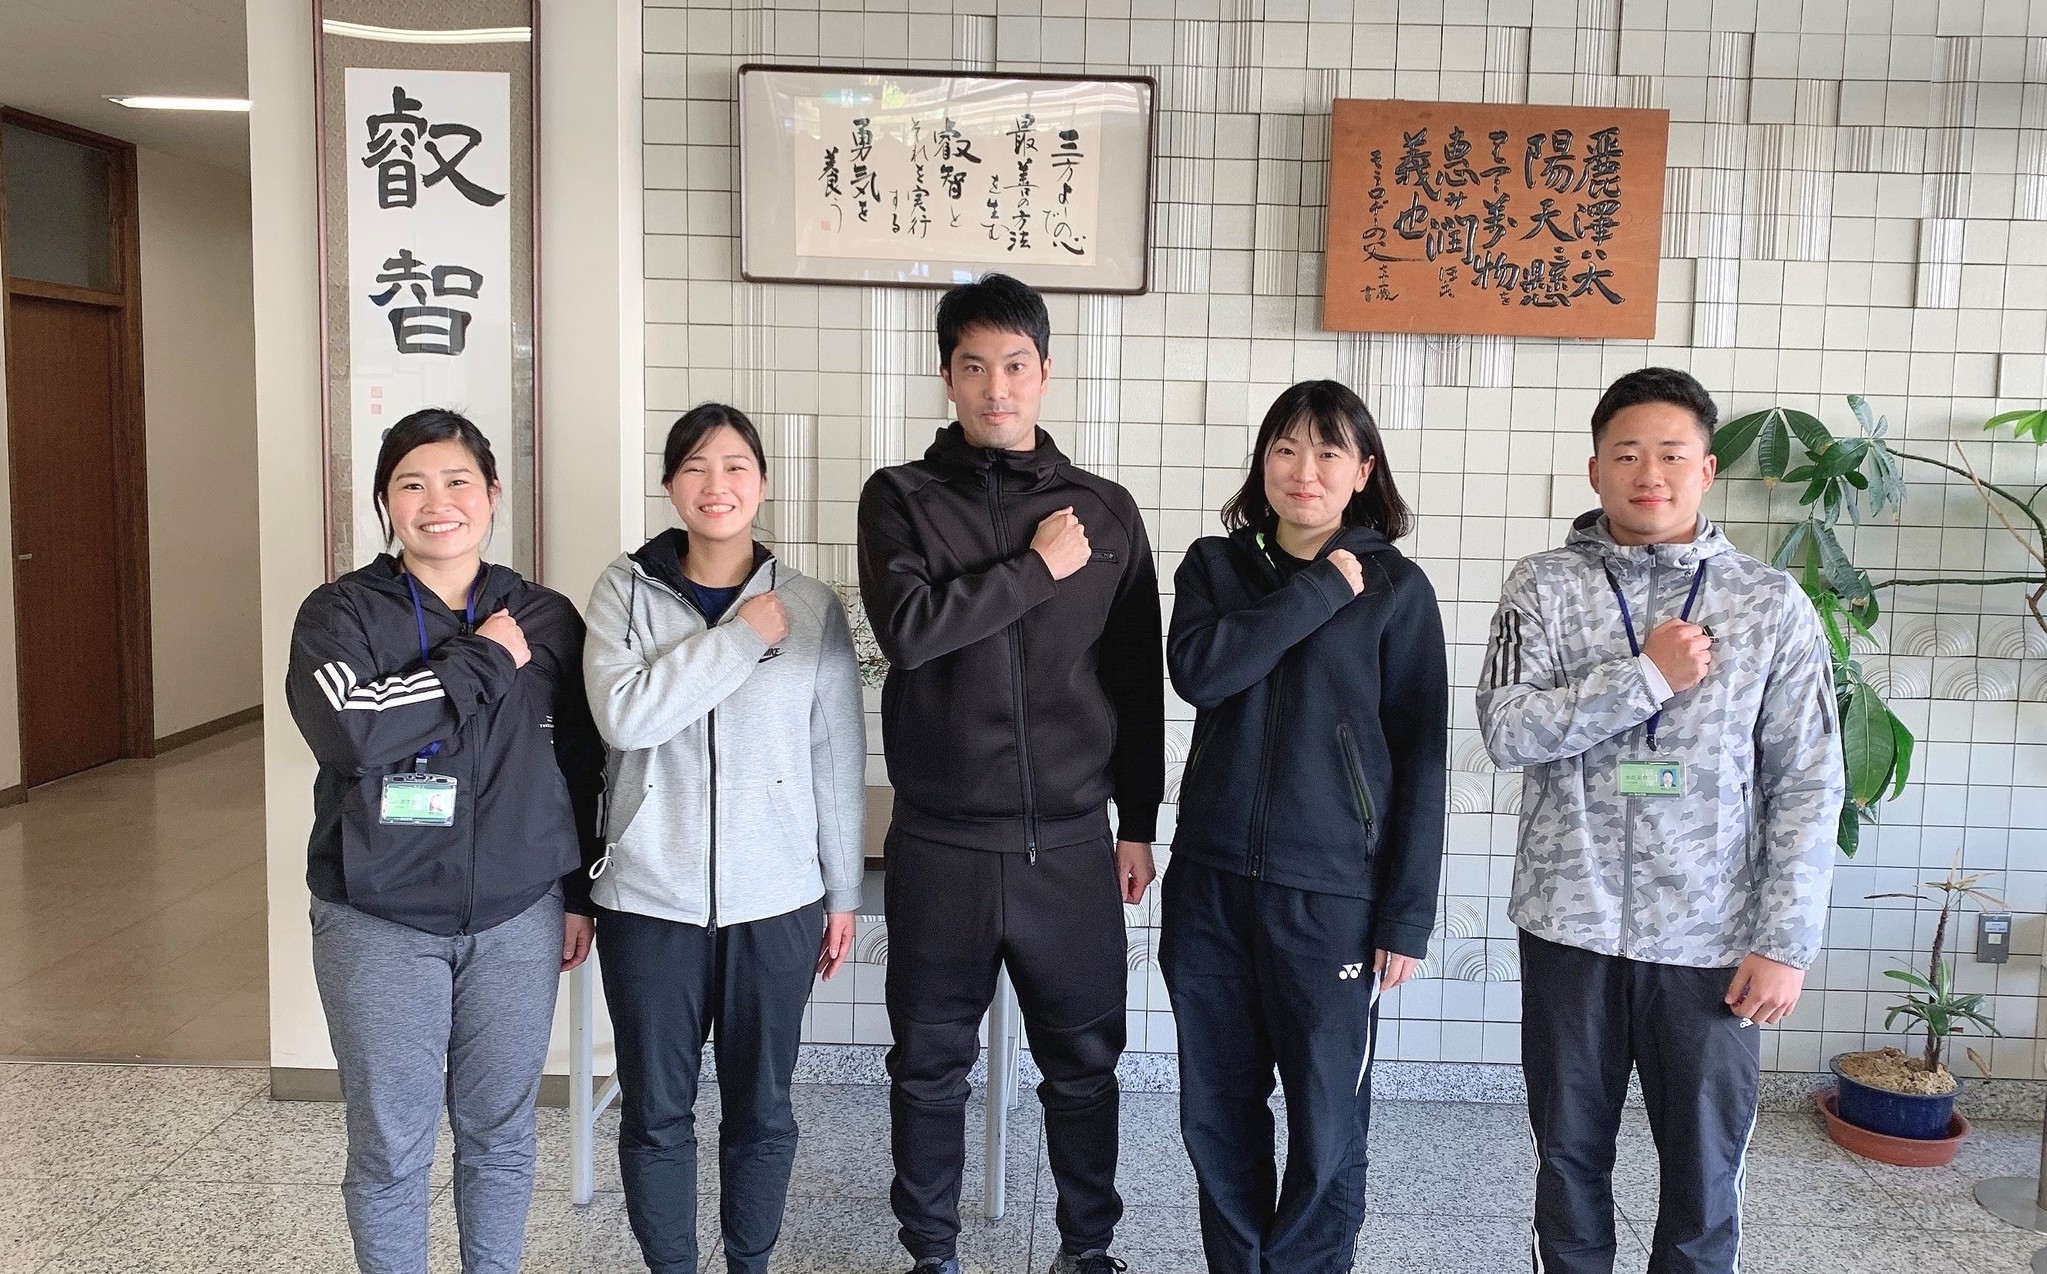 コロナによる運動不足を解決したい 体育科教員による家庭でできるトレーニング動画配信 麗澤 Reitaku のプレスリリース